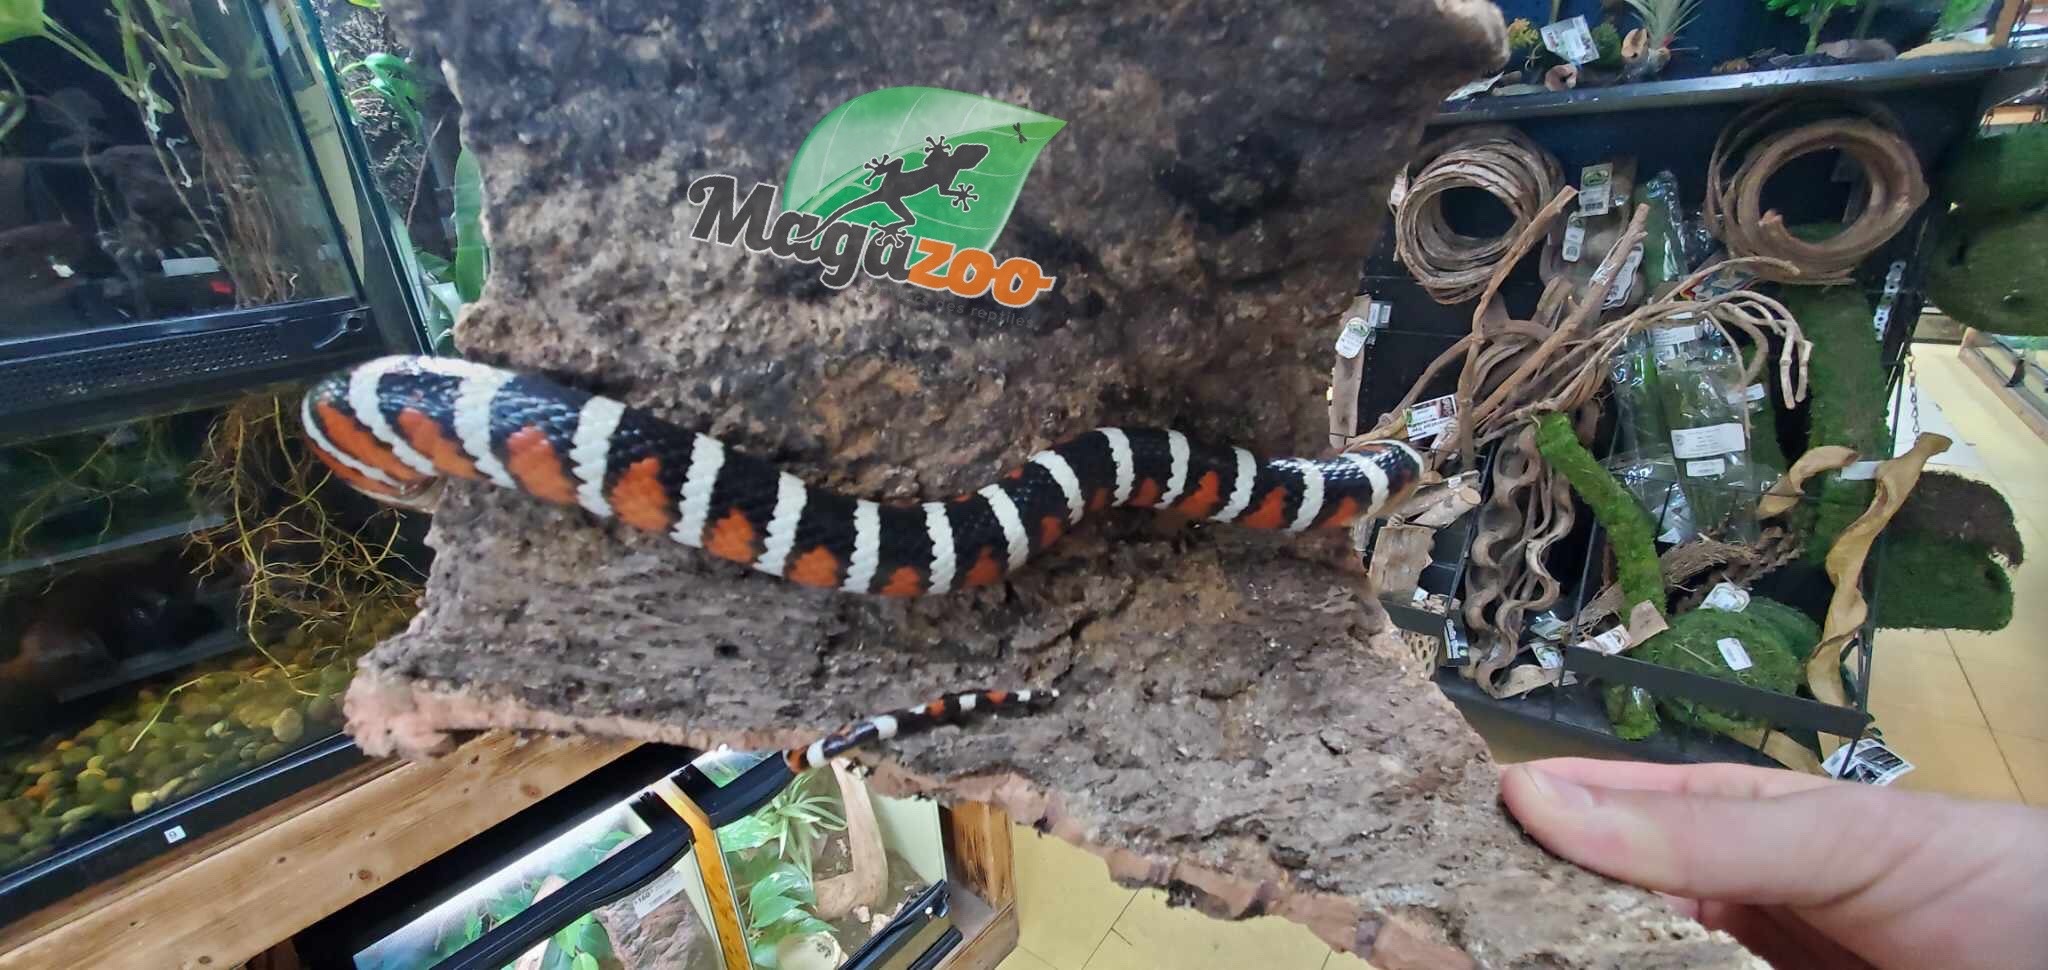 Magazoo Serpent roi des Montagnes Arizona (Arizona Mountain King snake) Juvénile / Adoption 2ième chance